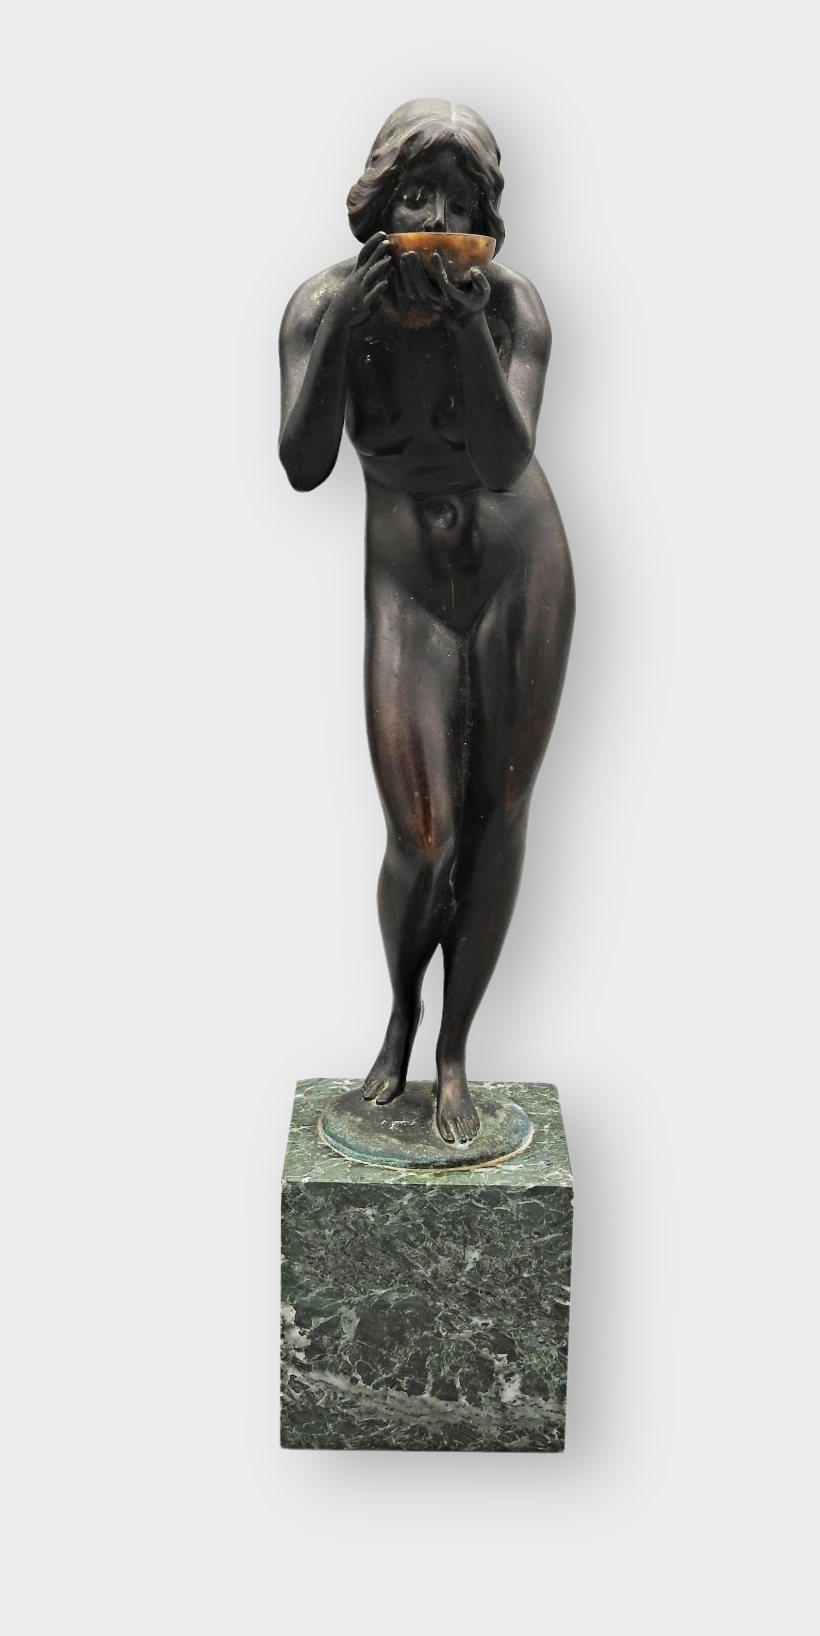 Artwork by Victor Heinrich Seifert, Anmutige Bronzestatuette „Die Trinkende“, Made of bronze